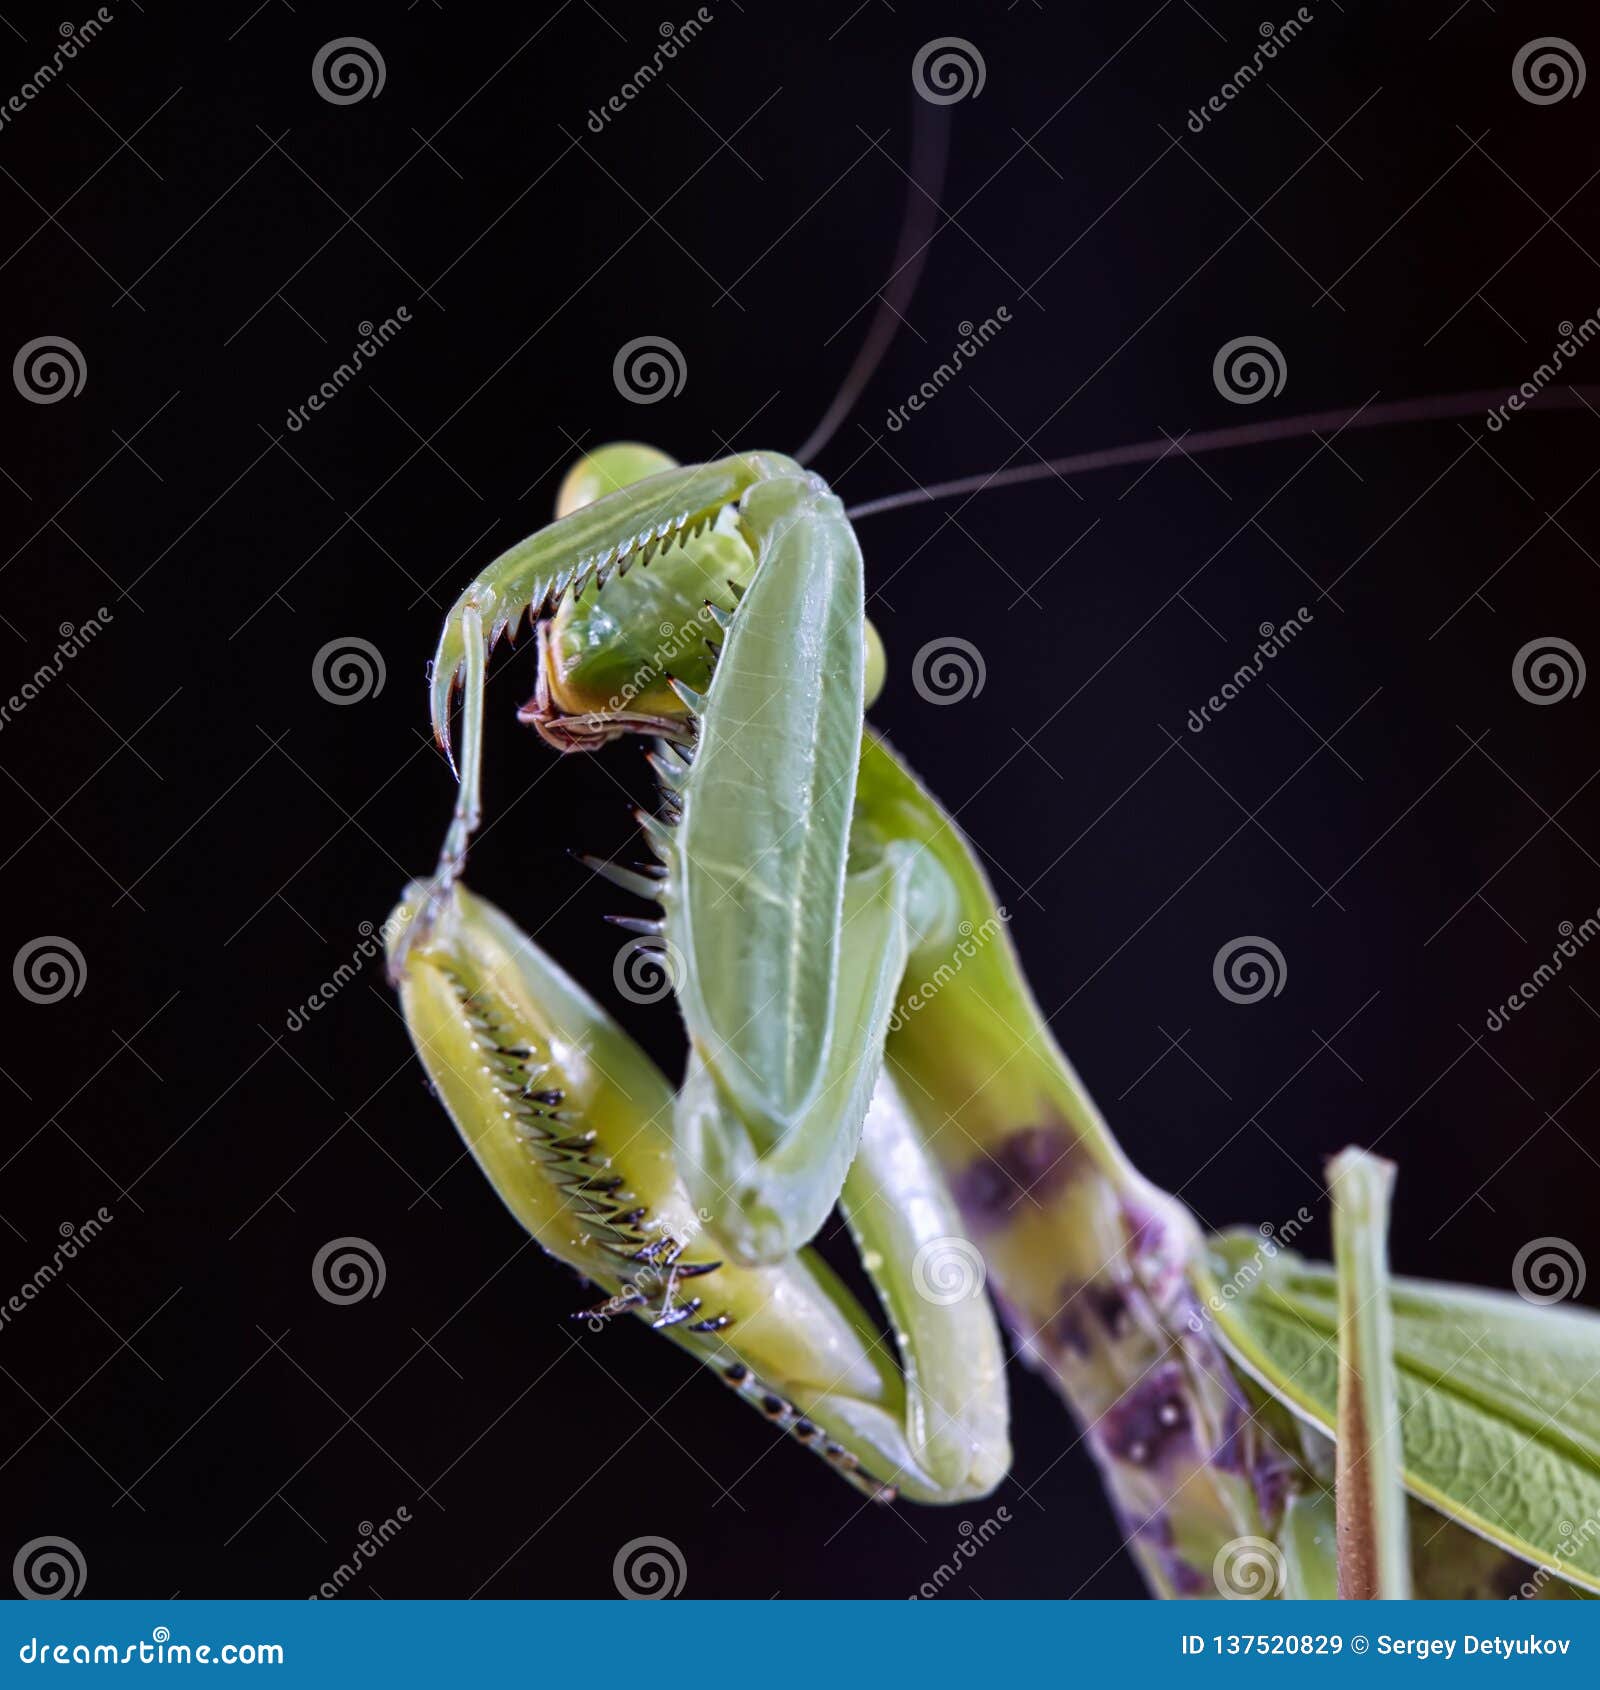 close-up of a european praying mantis mantis religiosa